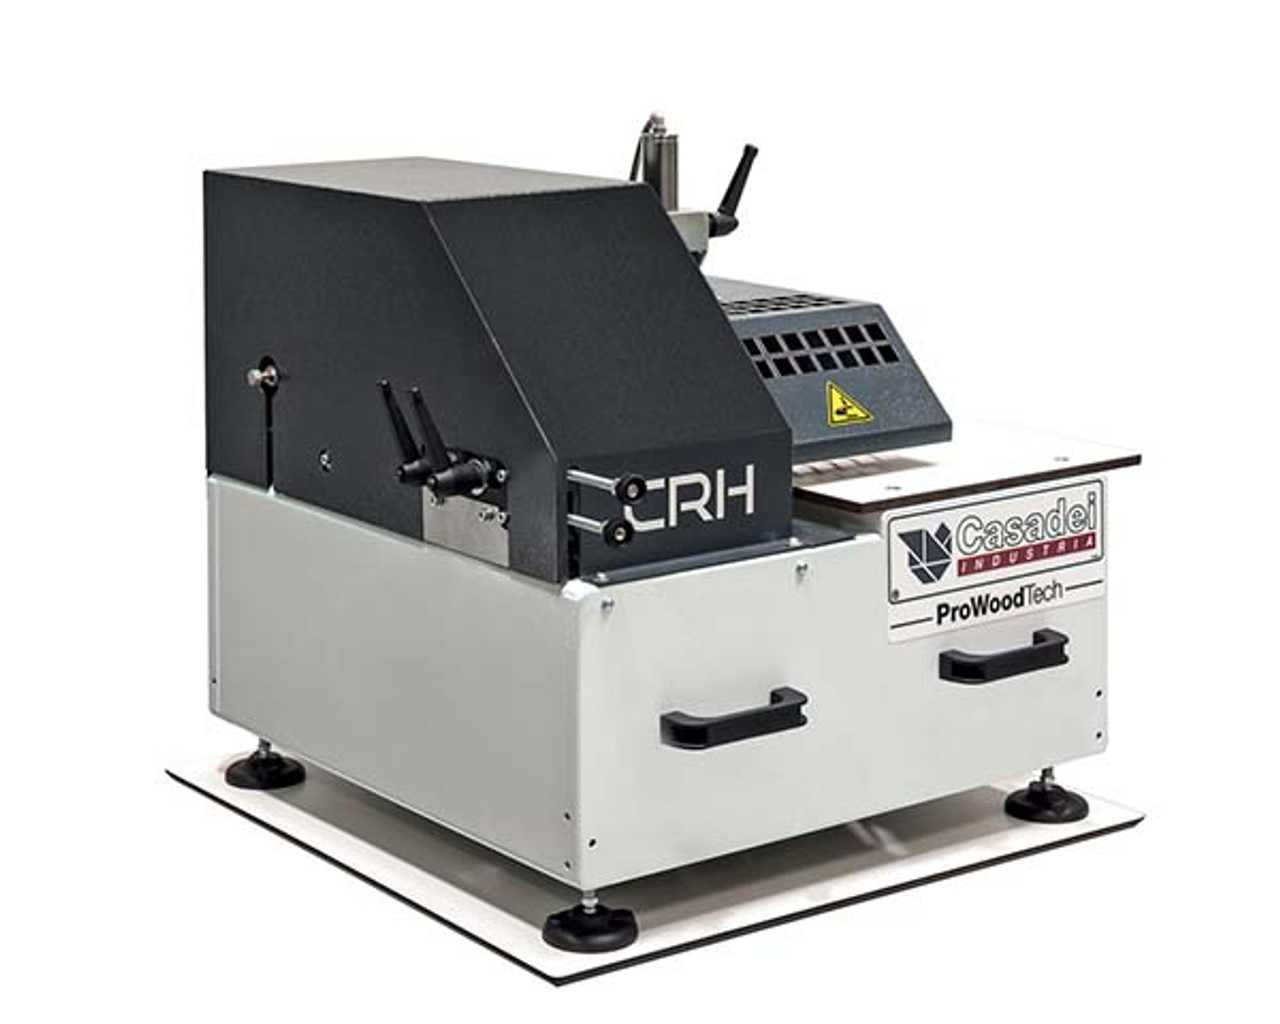 Image of Casadei CRH corner rounding machine